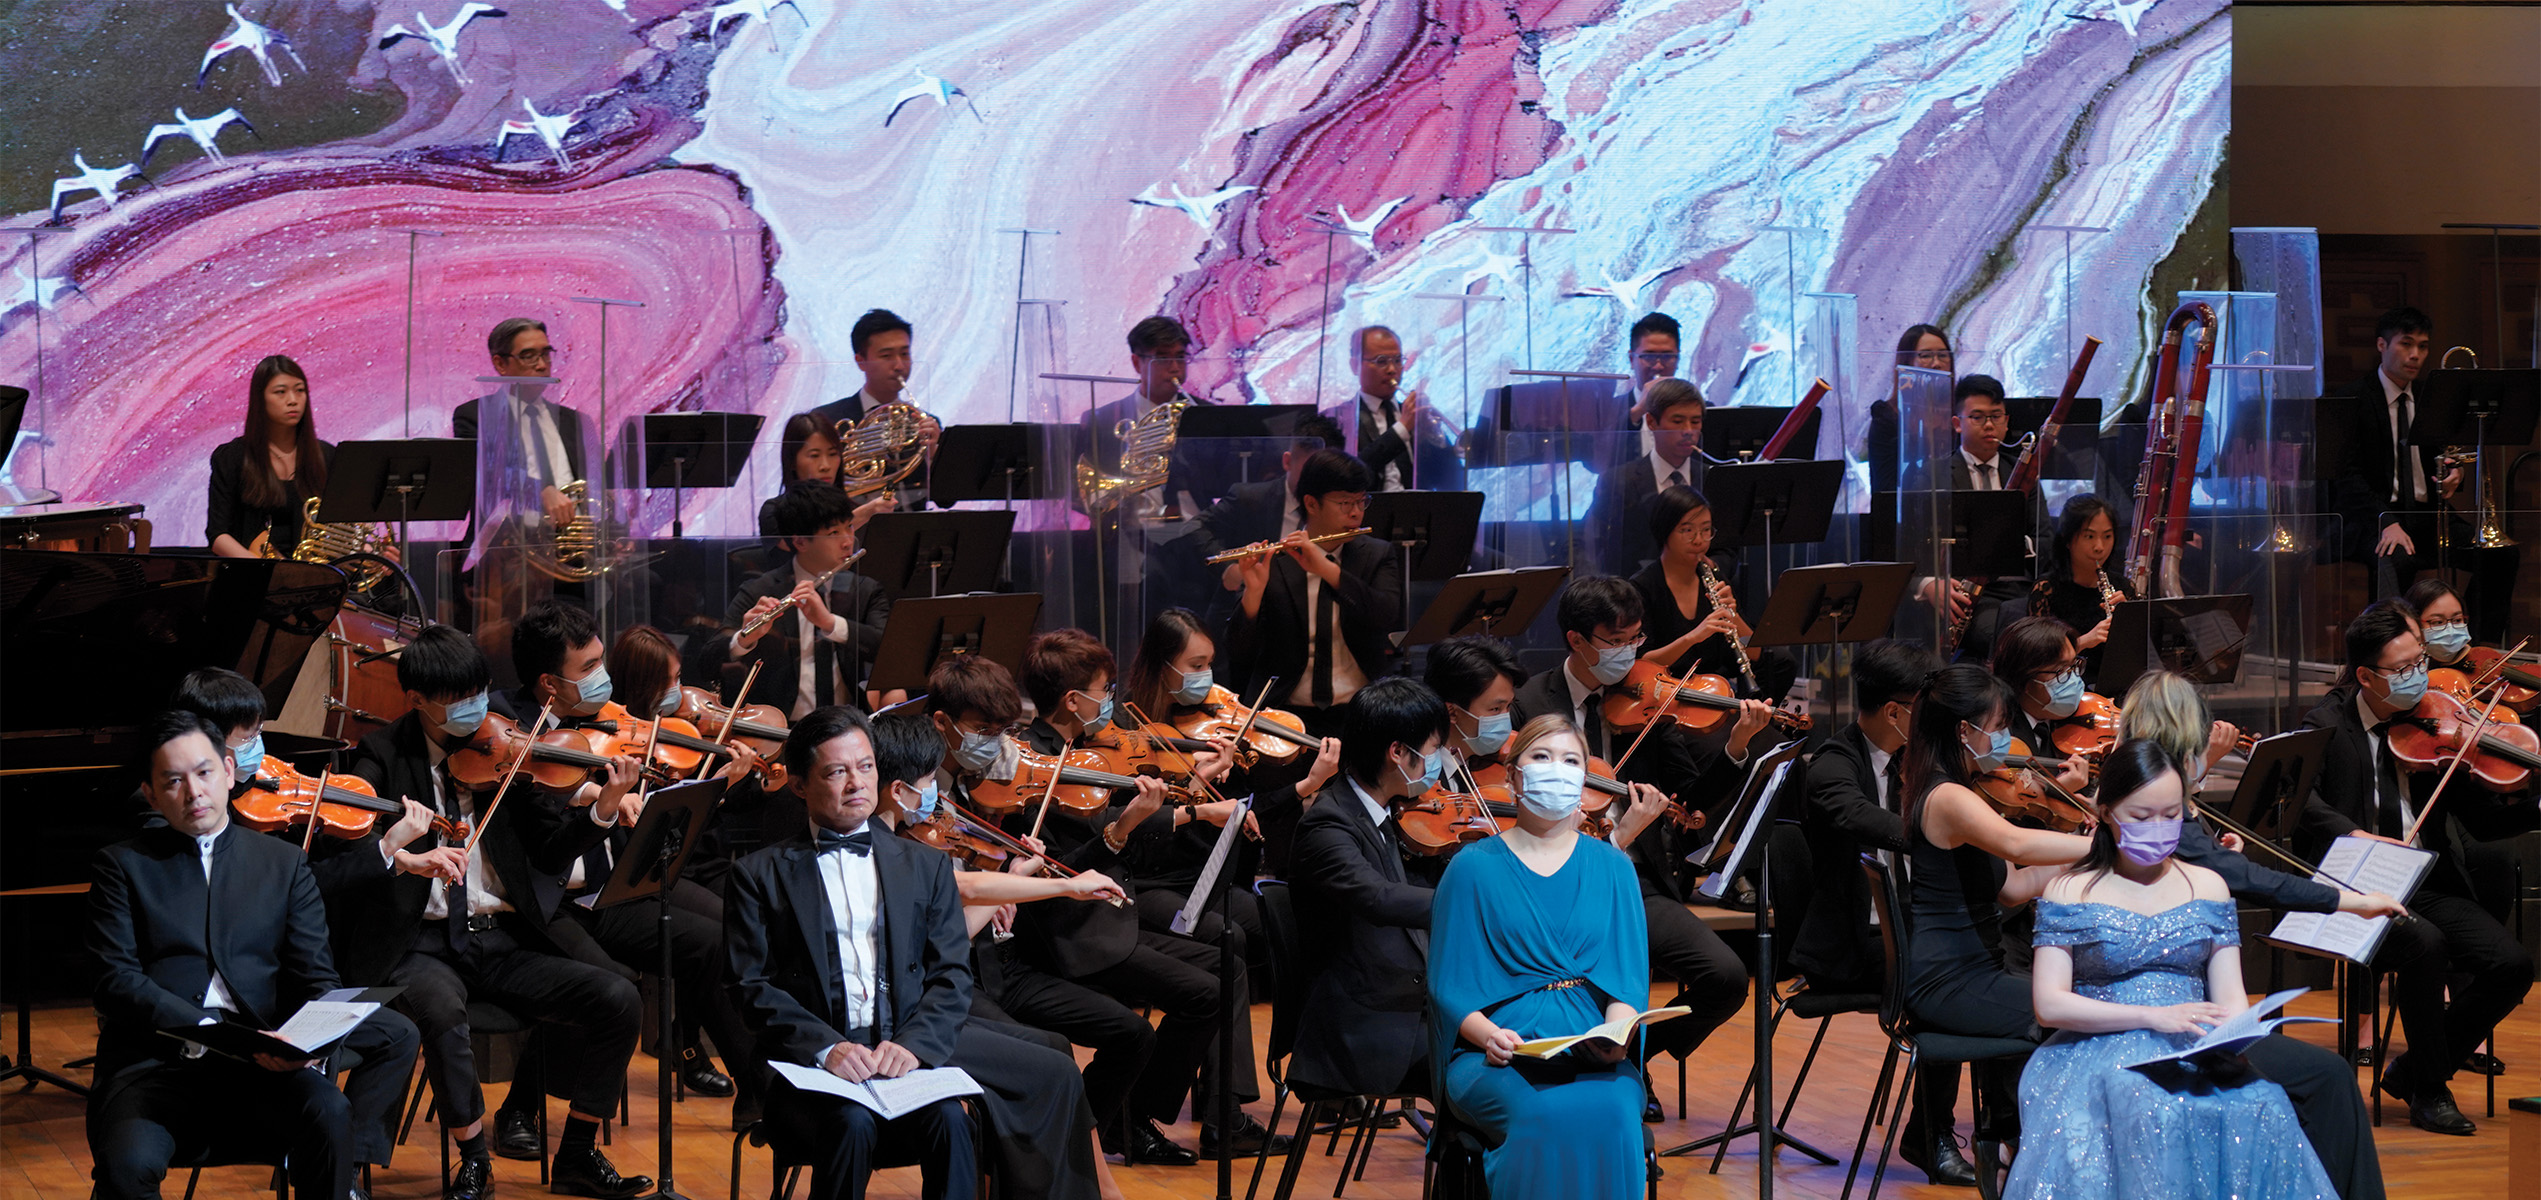 Aerial Symphony/ Concert Hall, Hong Kong Cultural Centre. Photos credit: © Hong Kong Orchestra